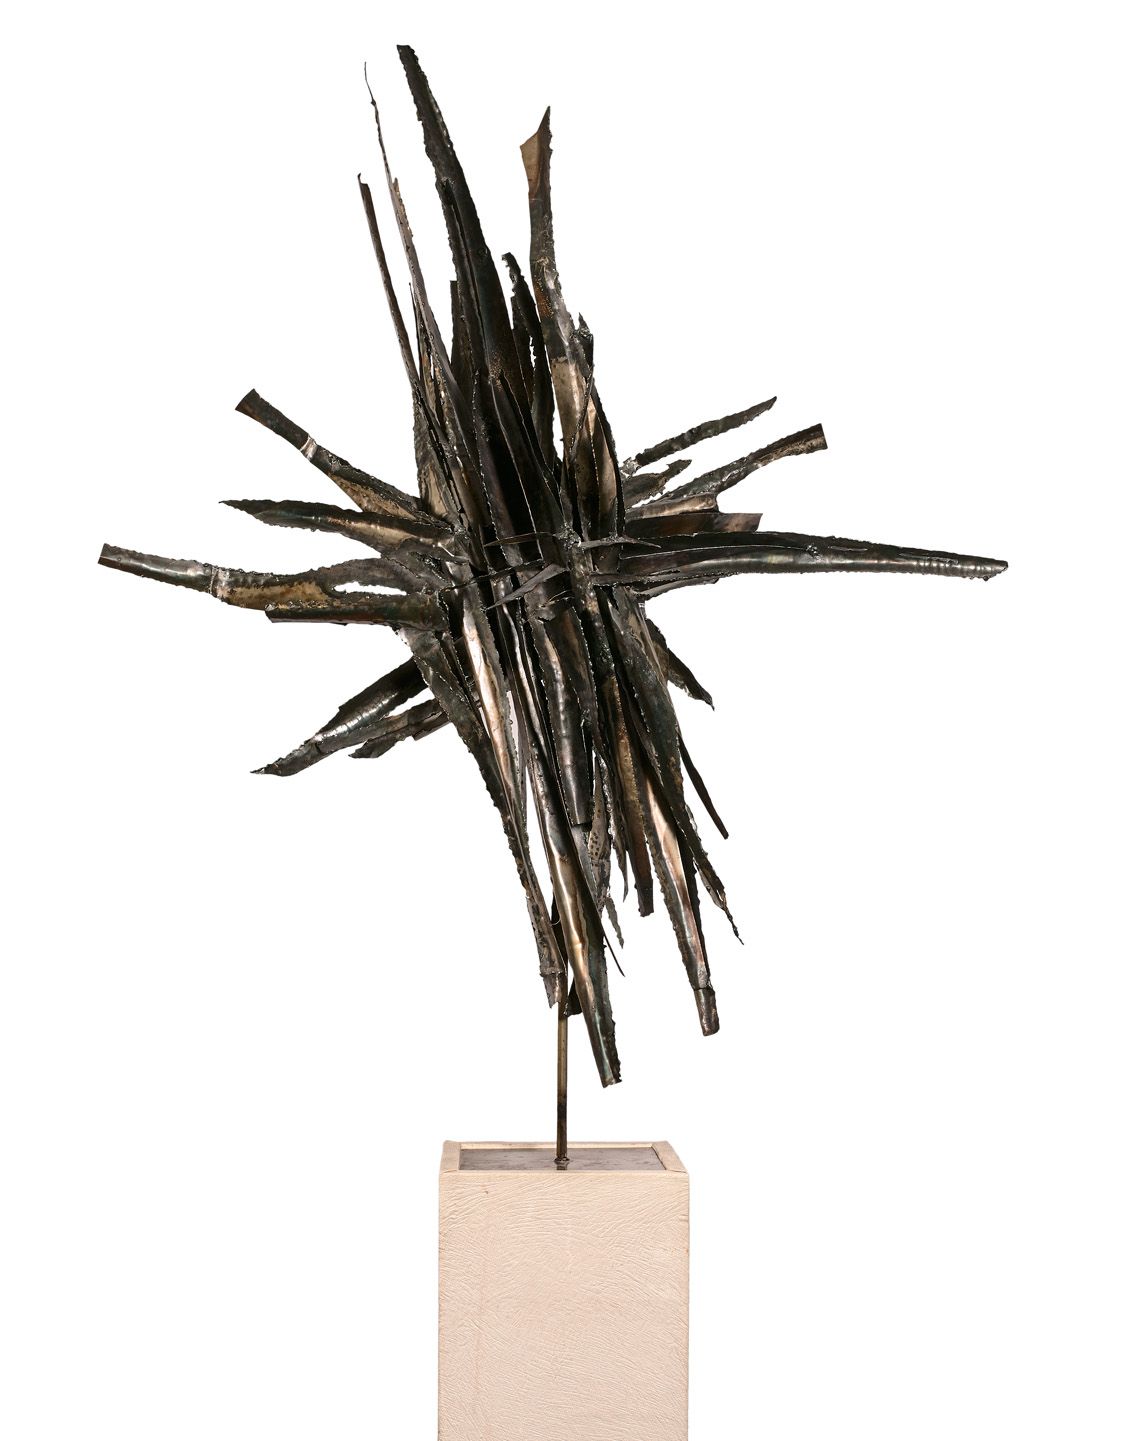 LEE 李烨（1932-2014）

摘要构成

焊接金属的雕塑，底座上有签名和日期 "Lee - 66"。

高度138 - 宽度103厘米

在一个底座上（&hellip;